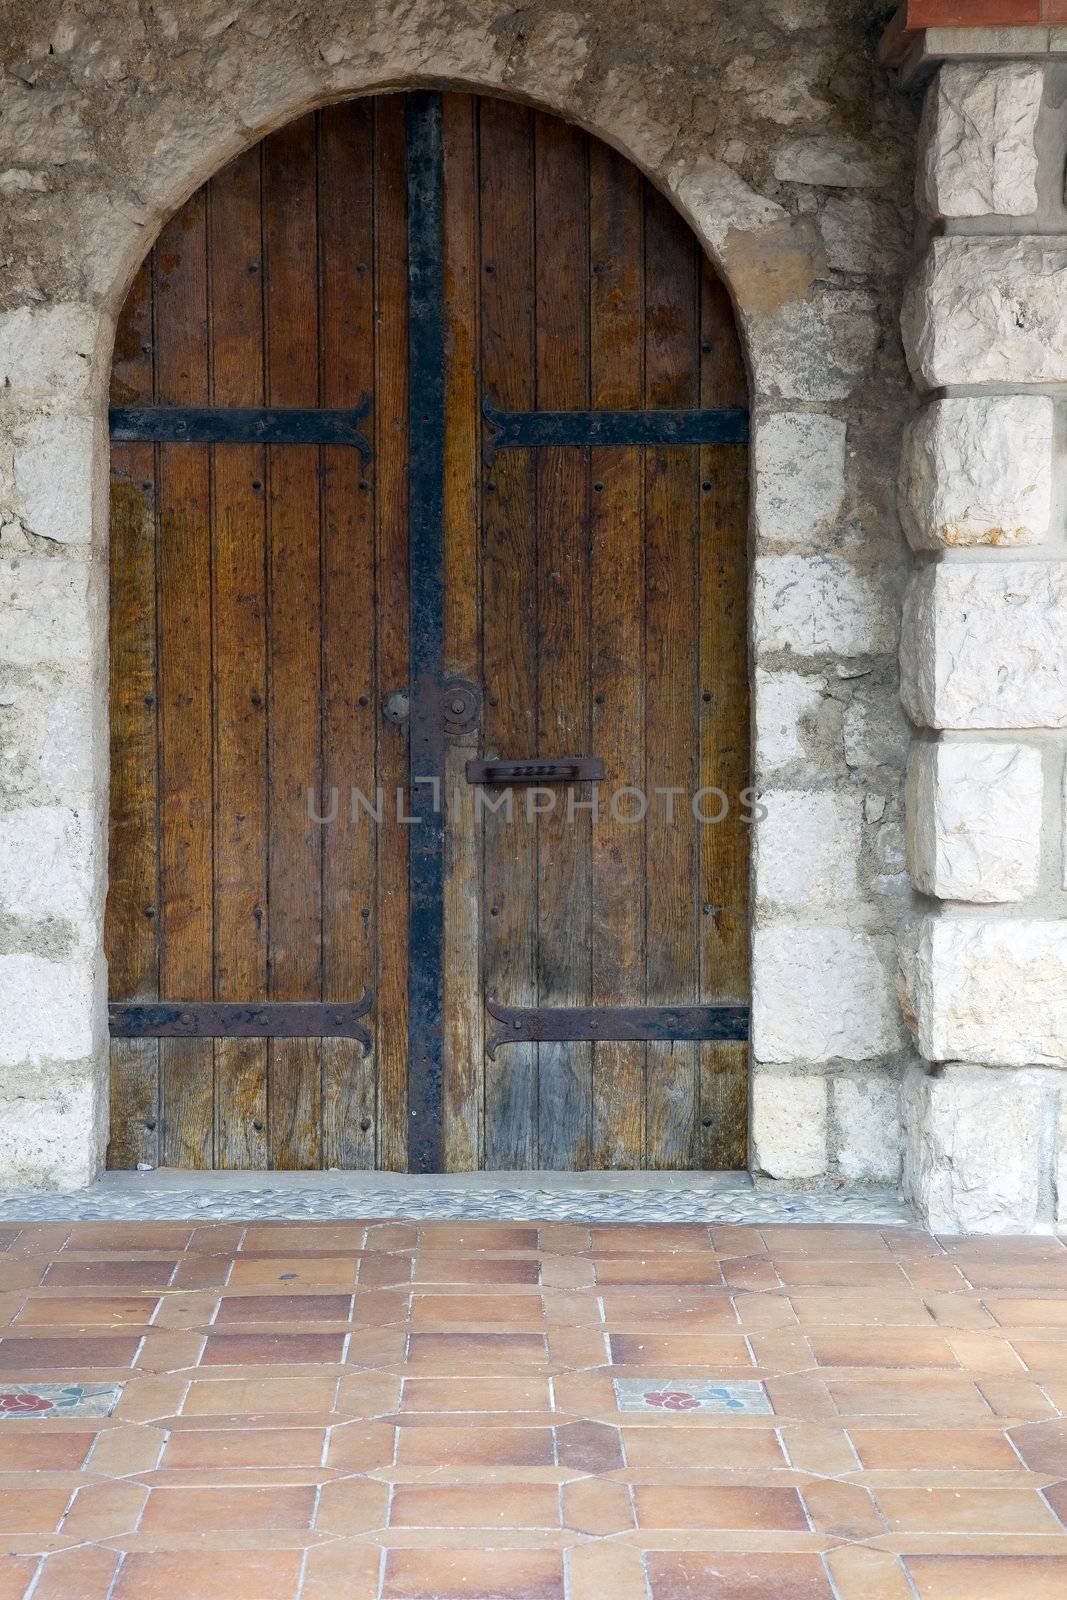 Old wooden door in stone building